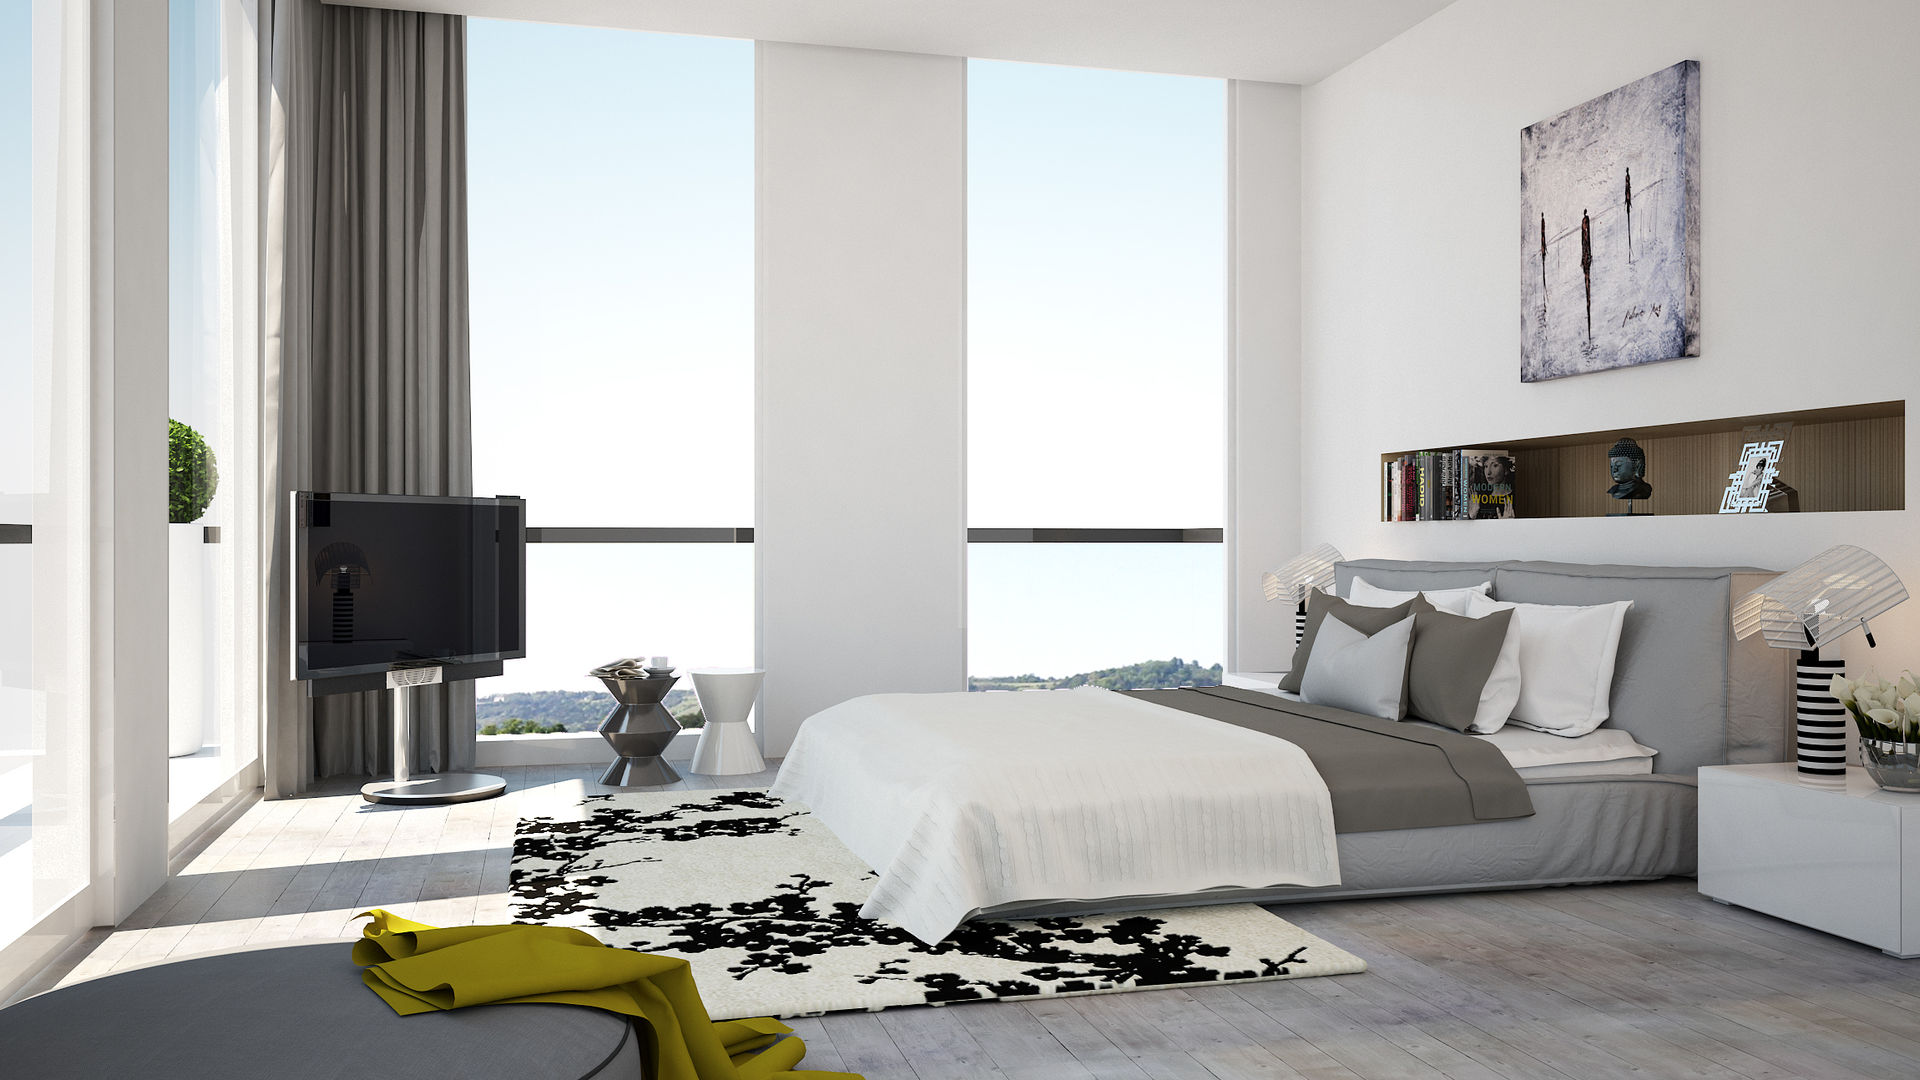 Bedroom, olivia Sciuto olivia Sciuto Dormitorios de estilo moderno